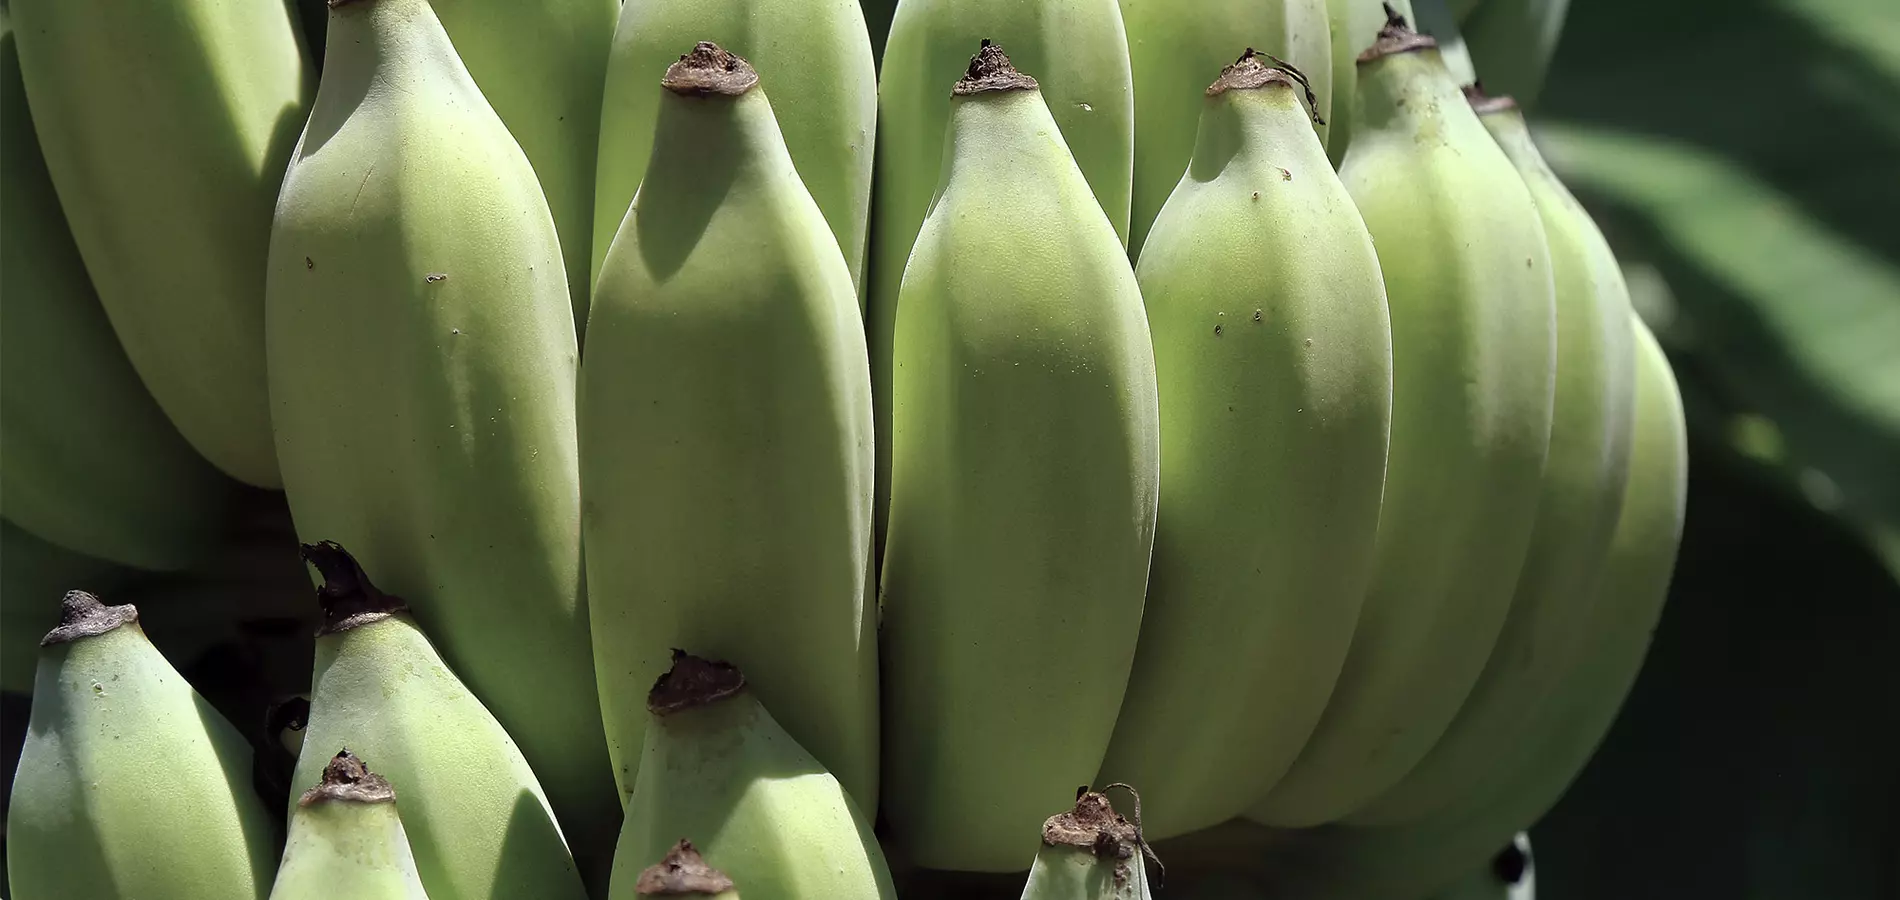 Banana close up